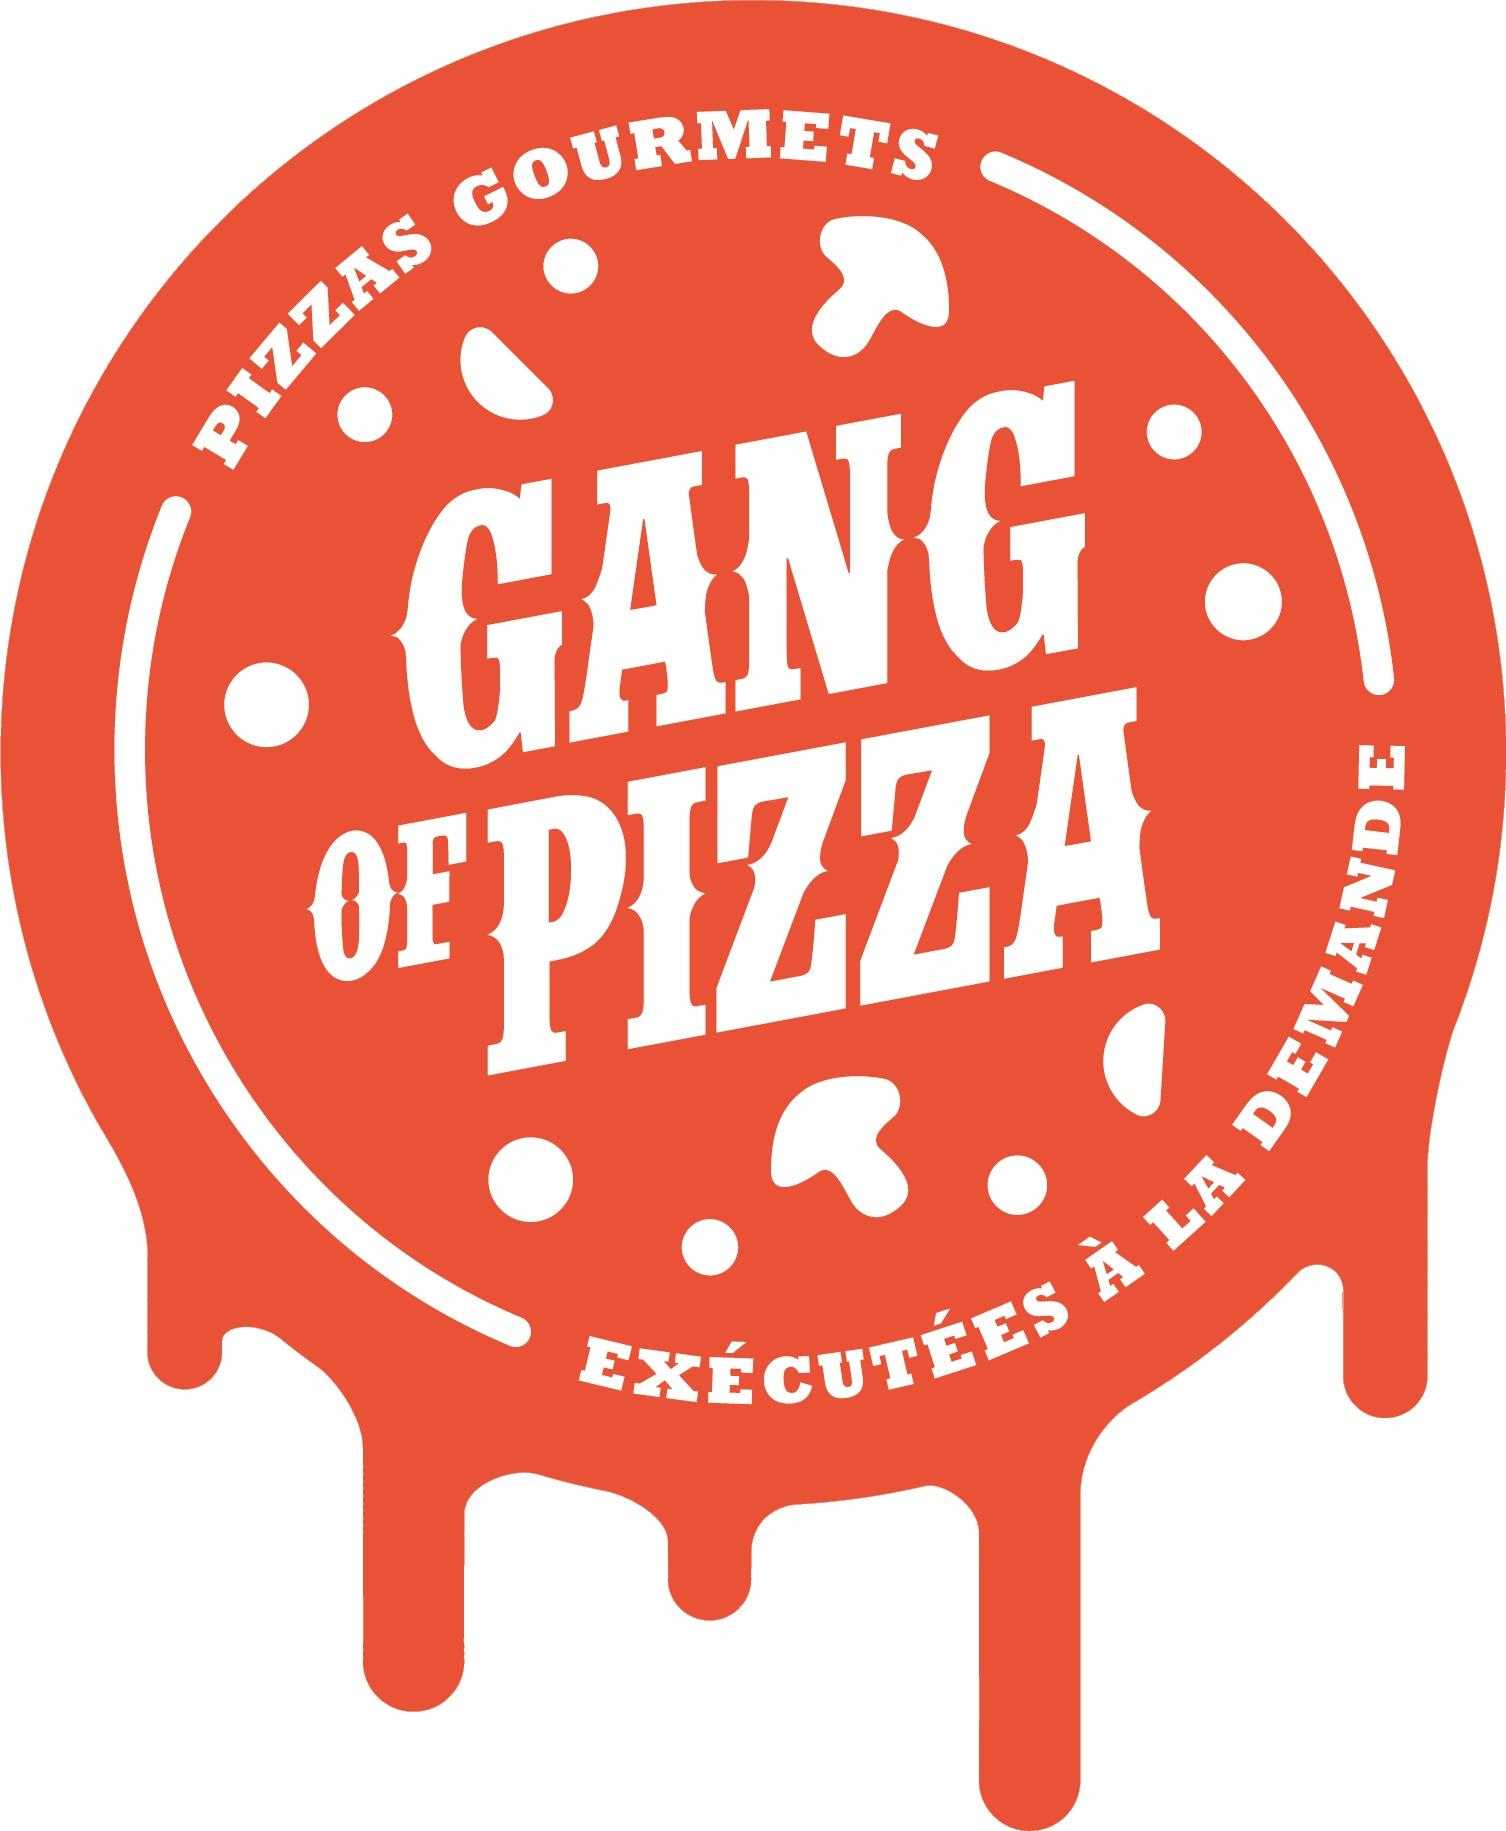 Gang Of Pizza Homécourt